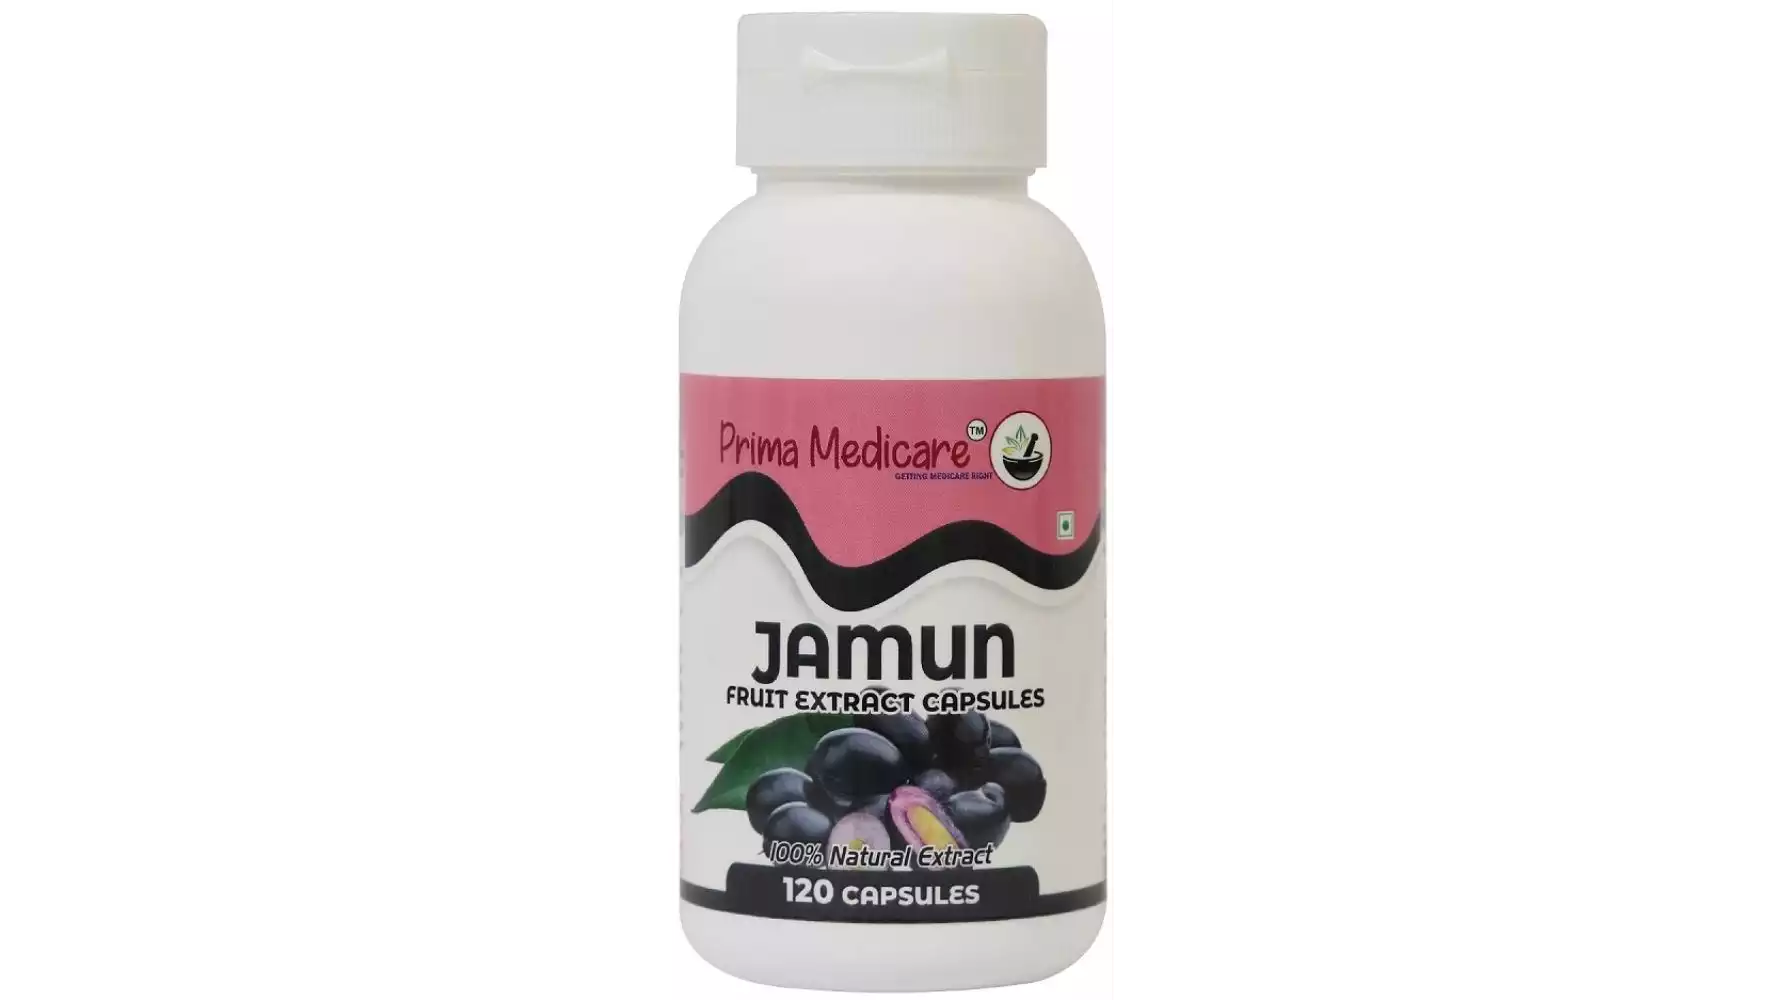 Prima Medicare Jamun Fruit Extract Capsules (120caps)